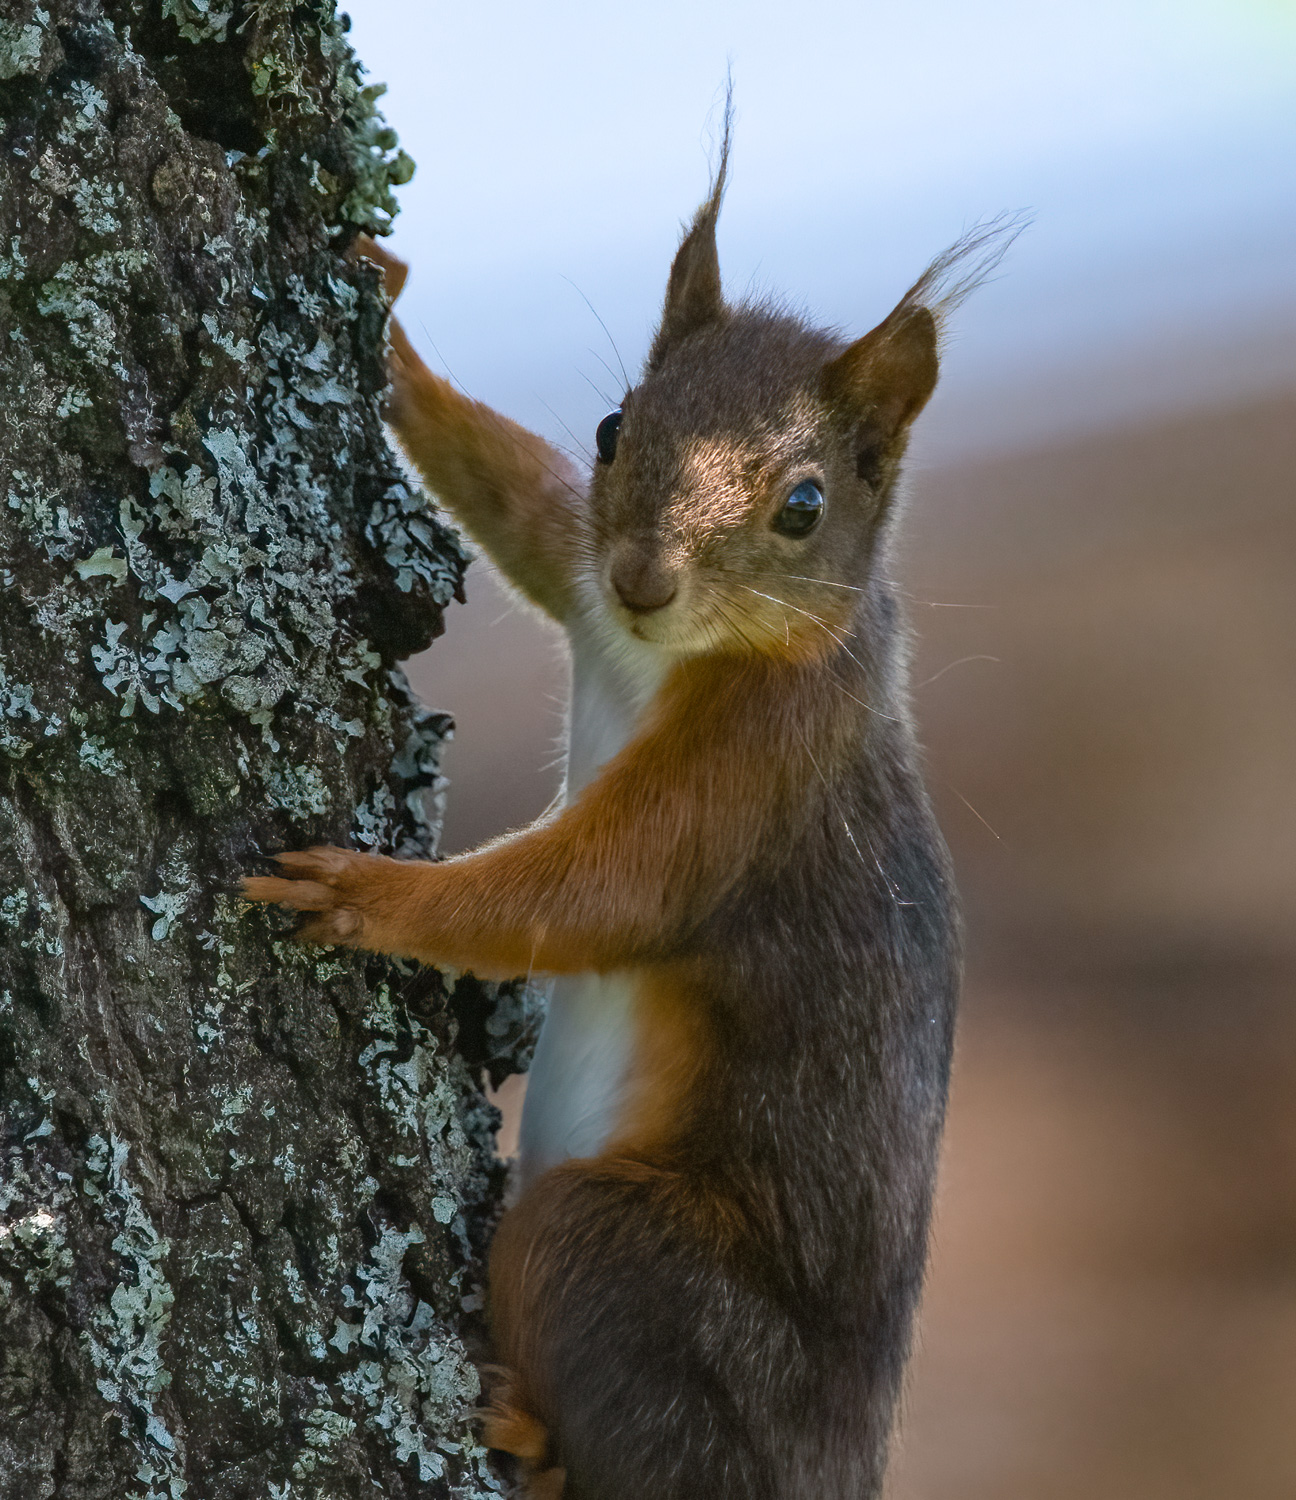 Eichhörnchen Portrait